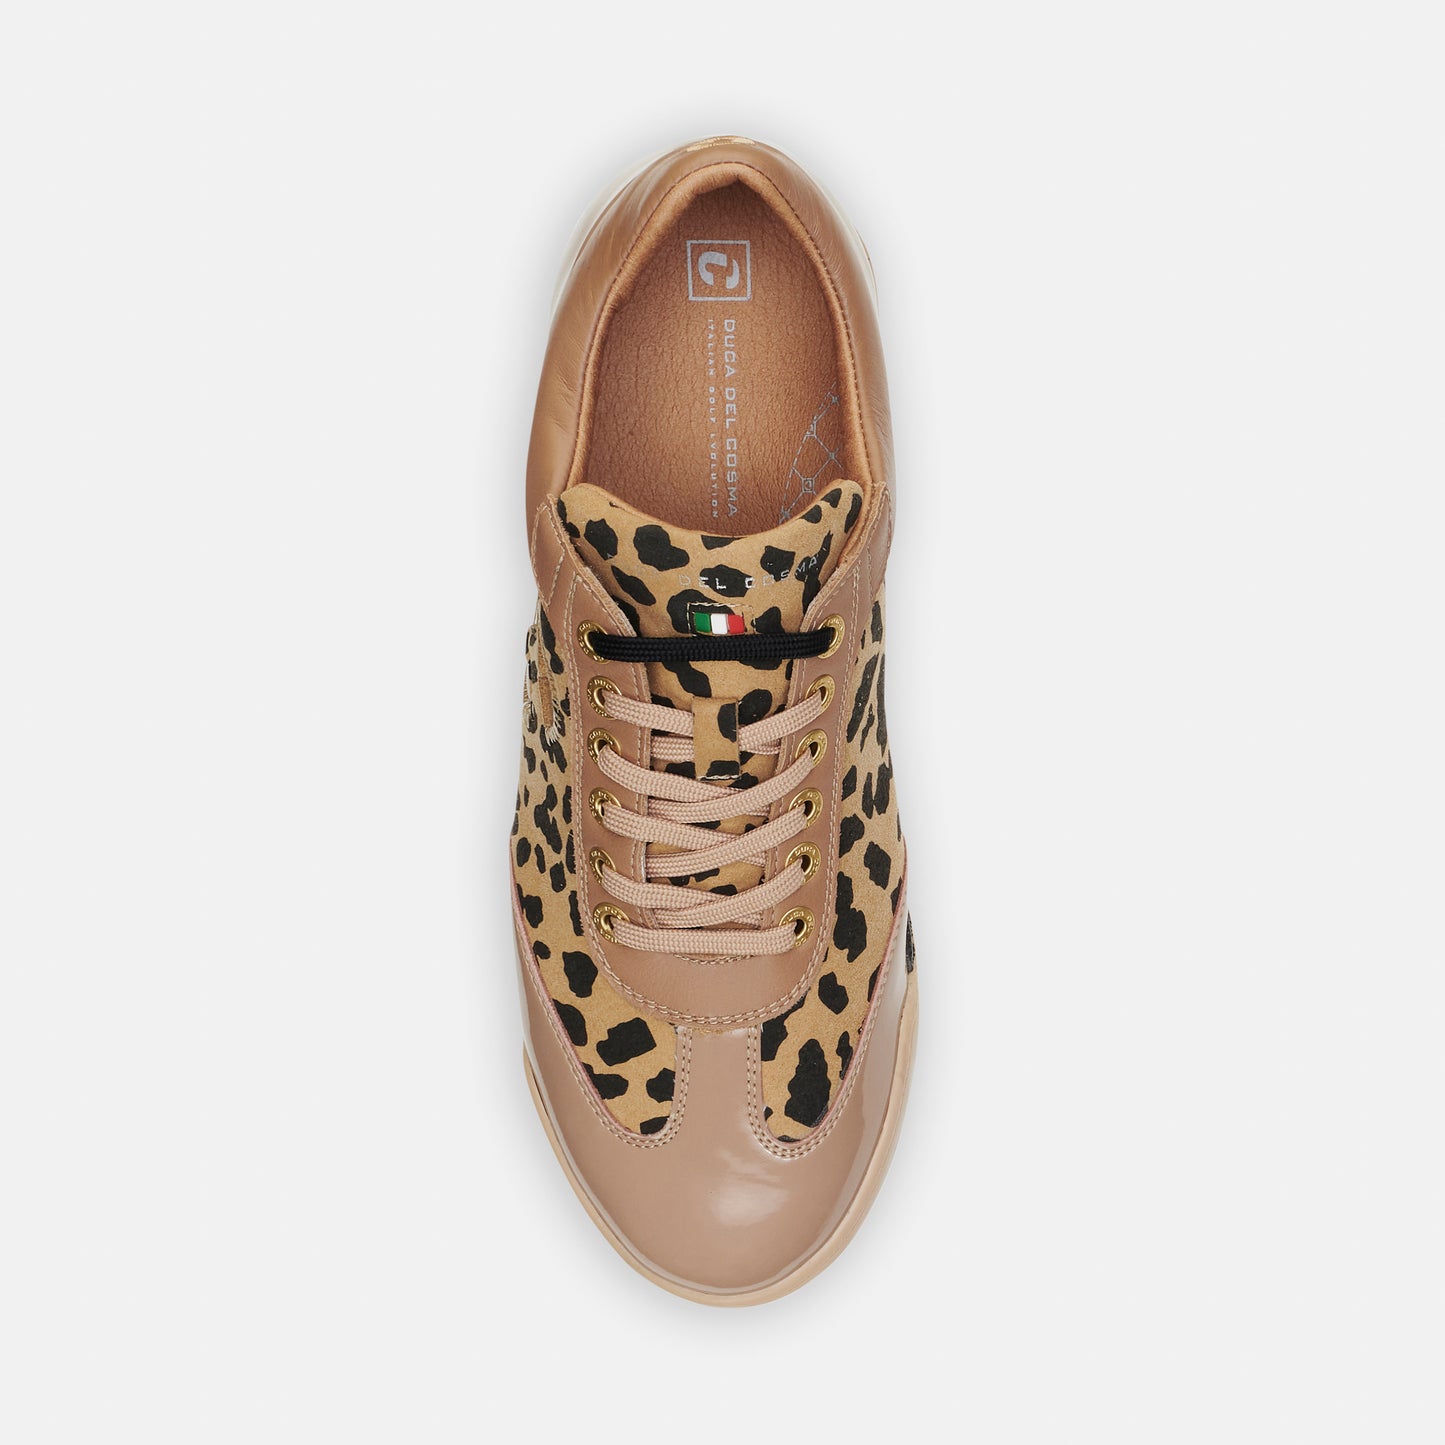 King Cheetah - Taupe